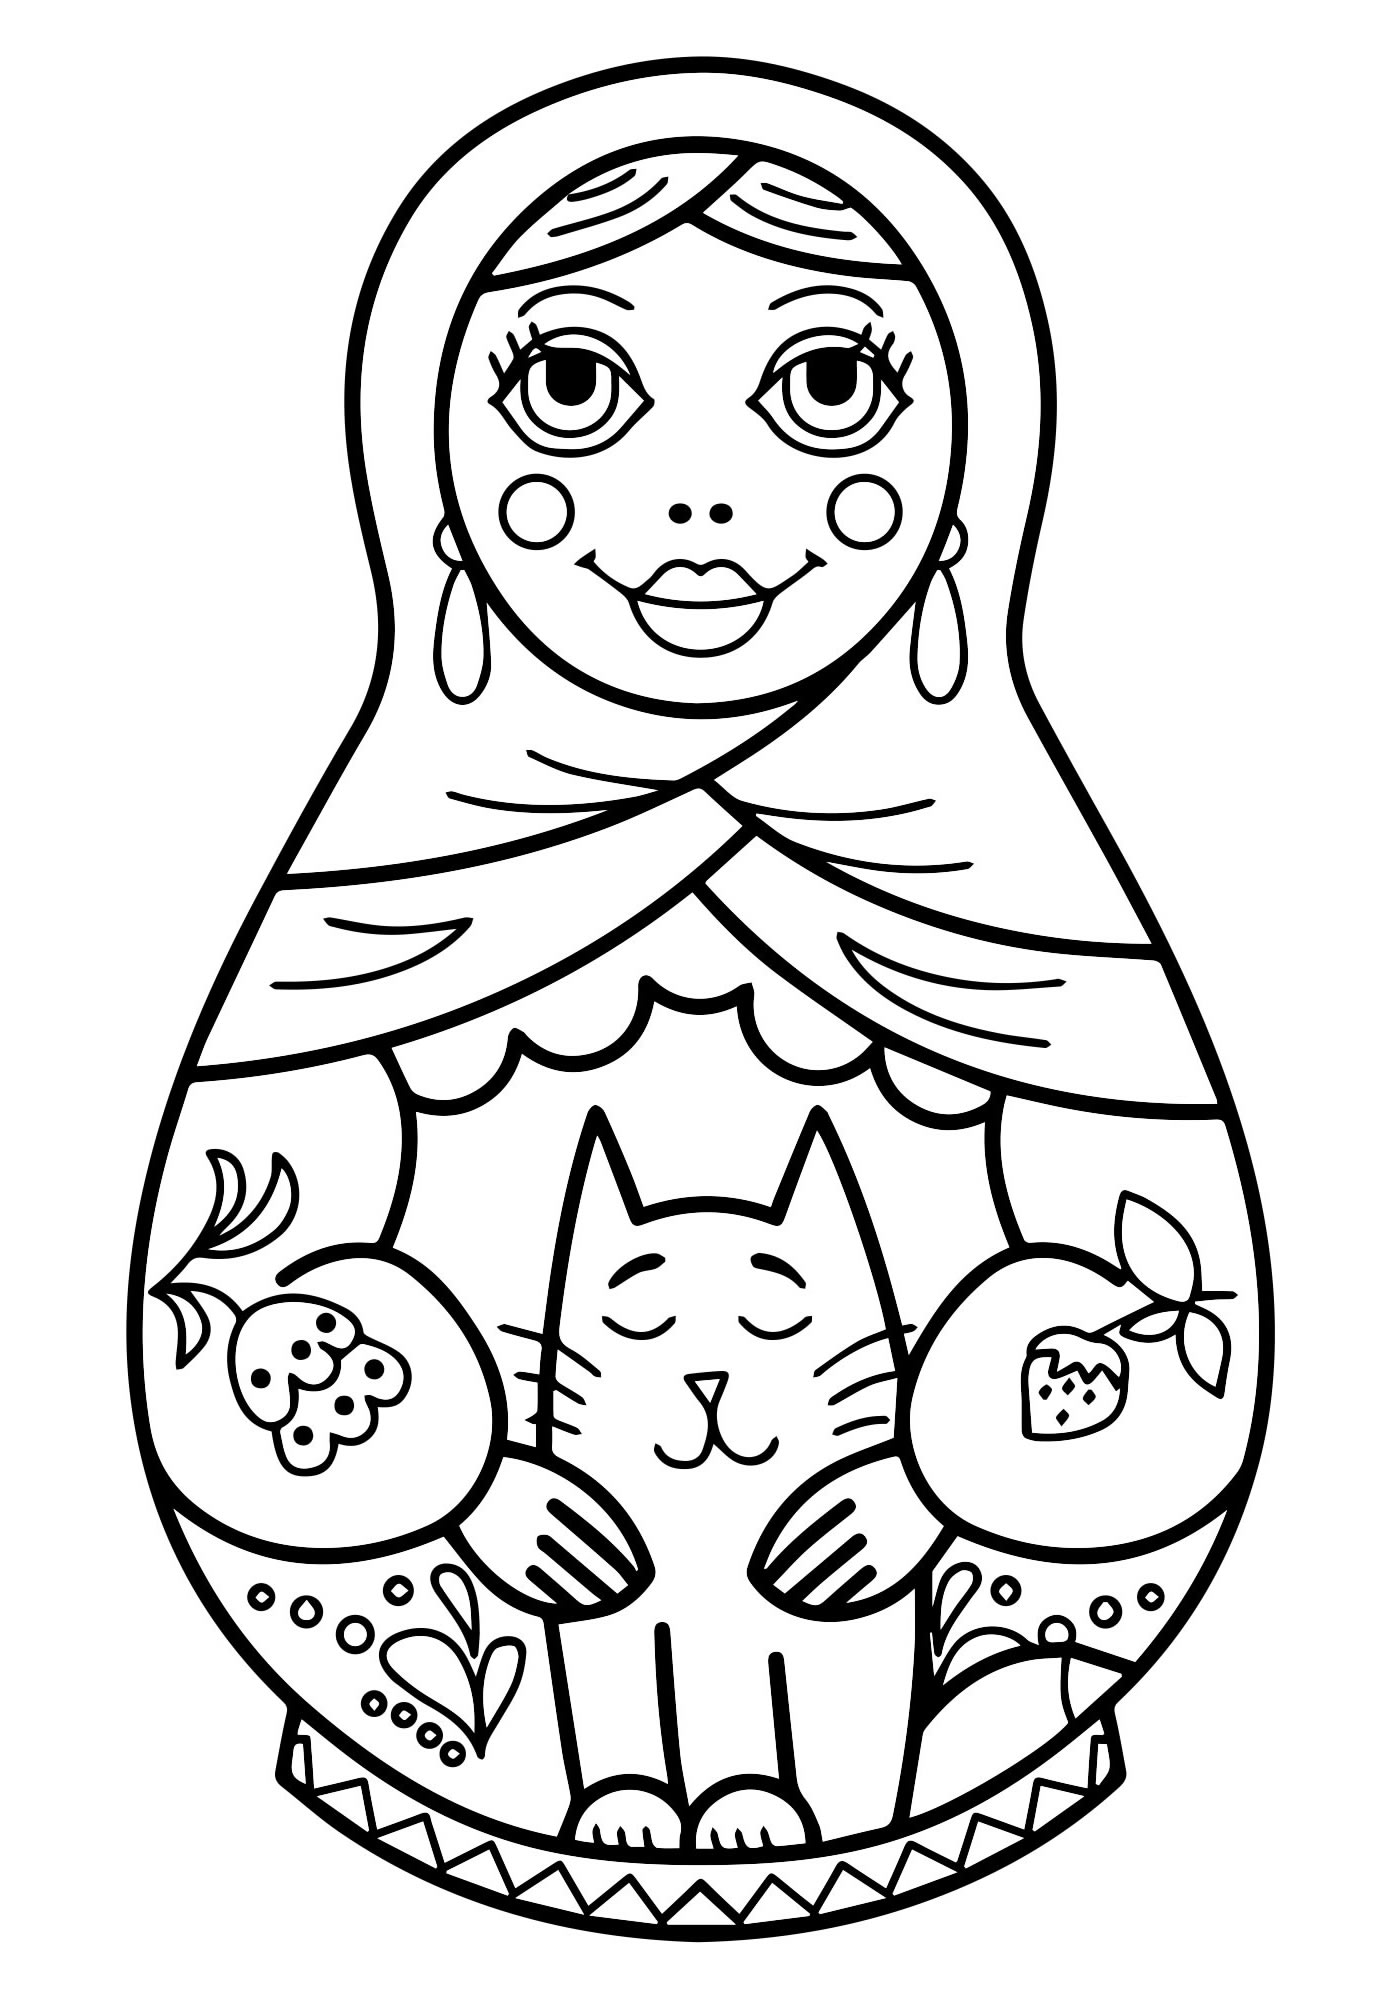 Матрешка с котом раскраска для детей